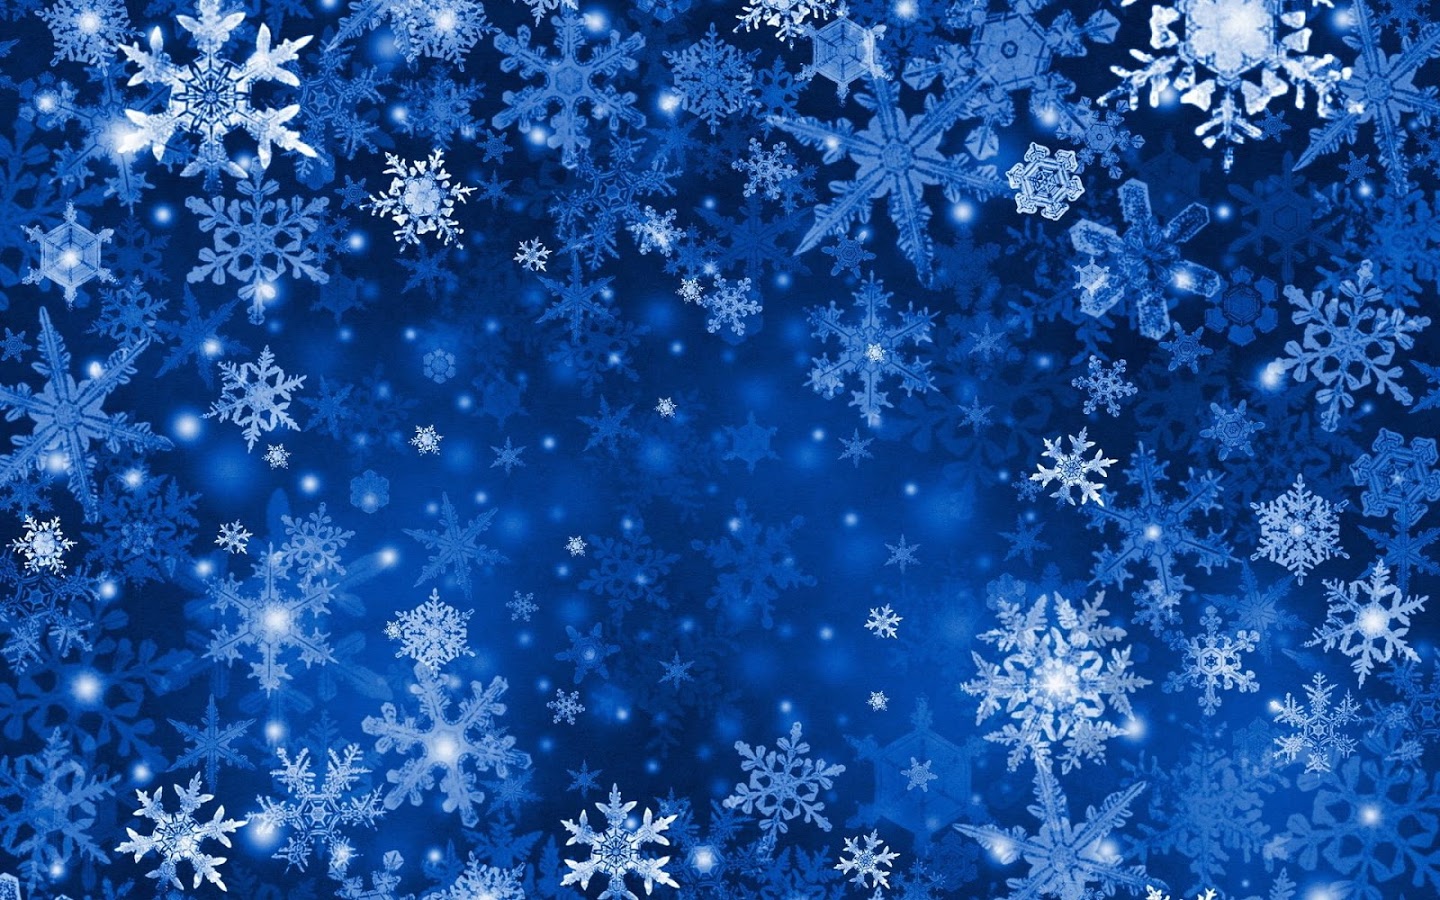 Blue Snowflake Wallpaper - Blue Snowflake Background Free - HD Wallpaper 